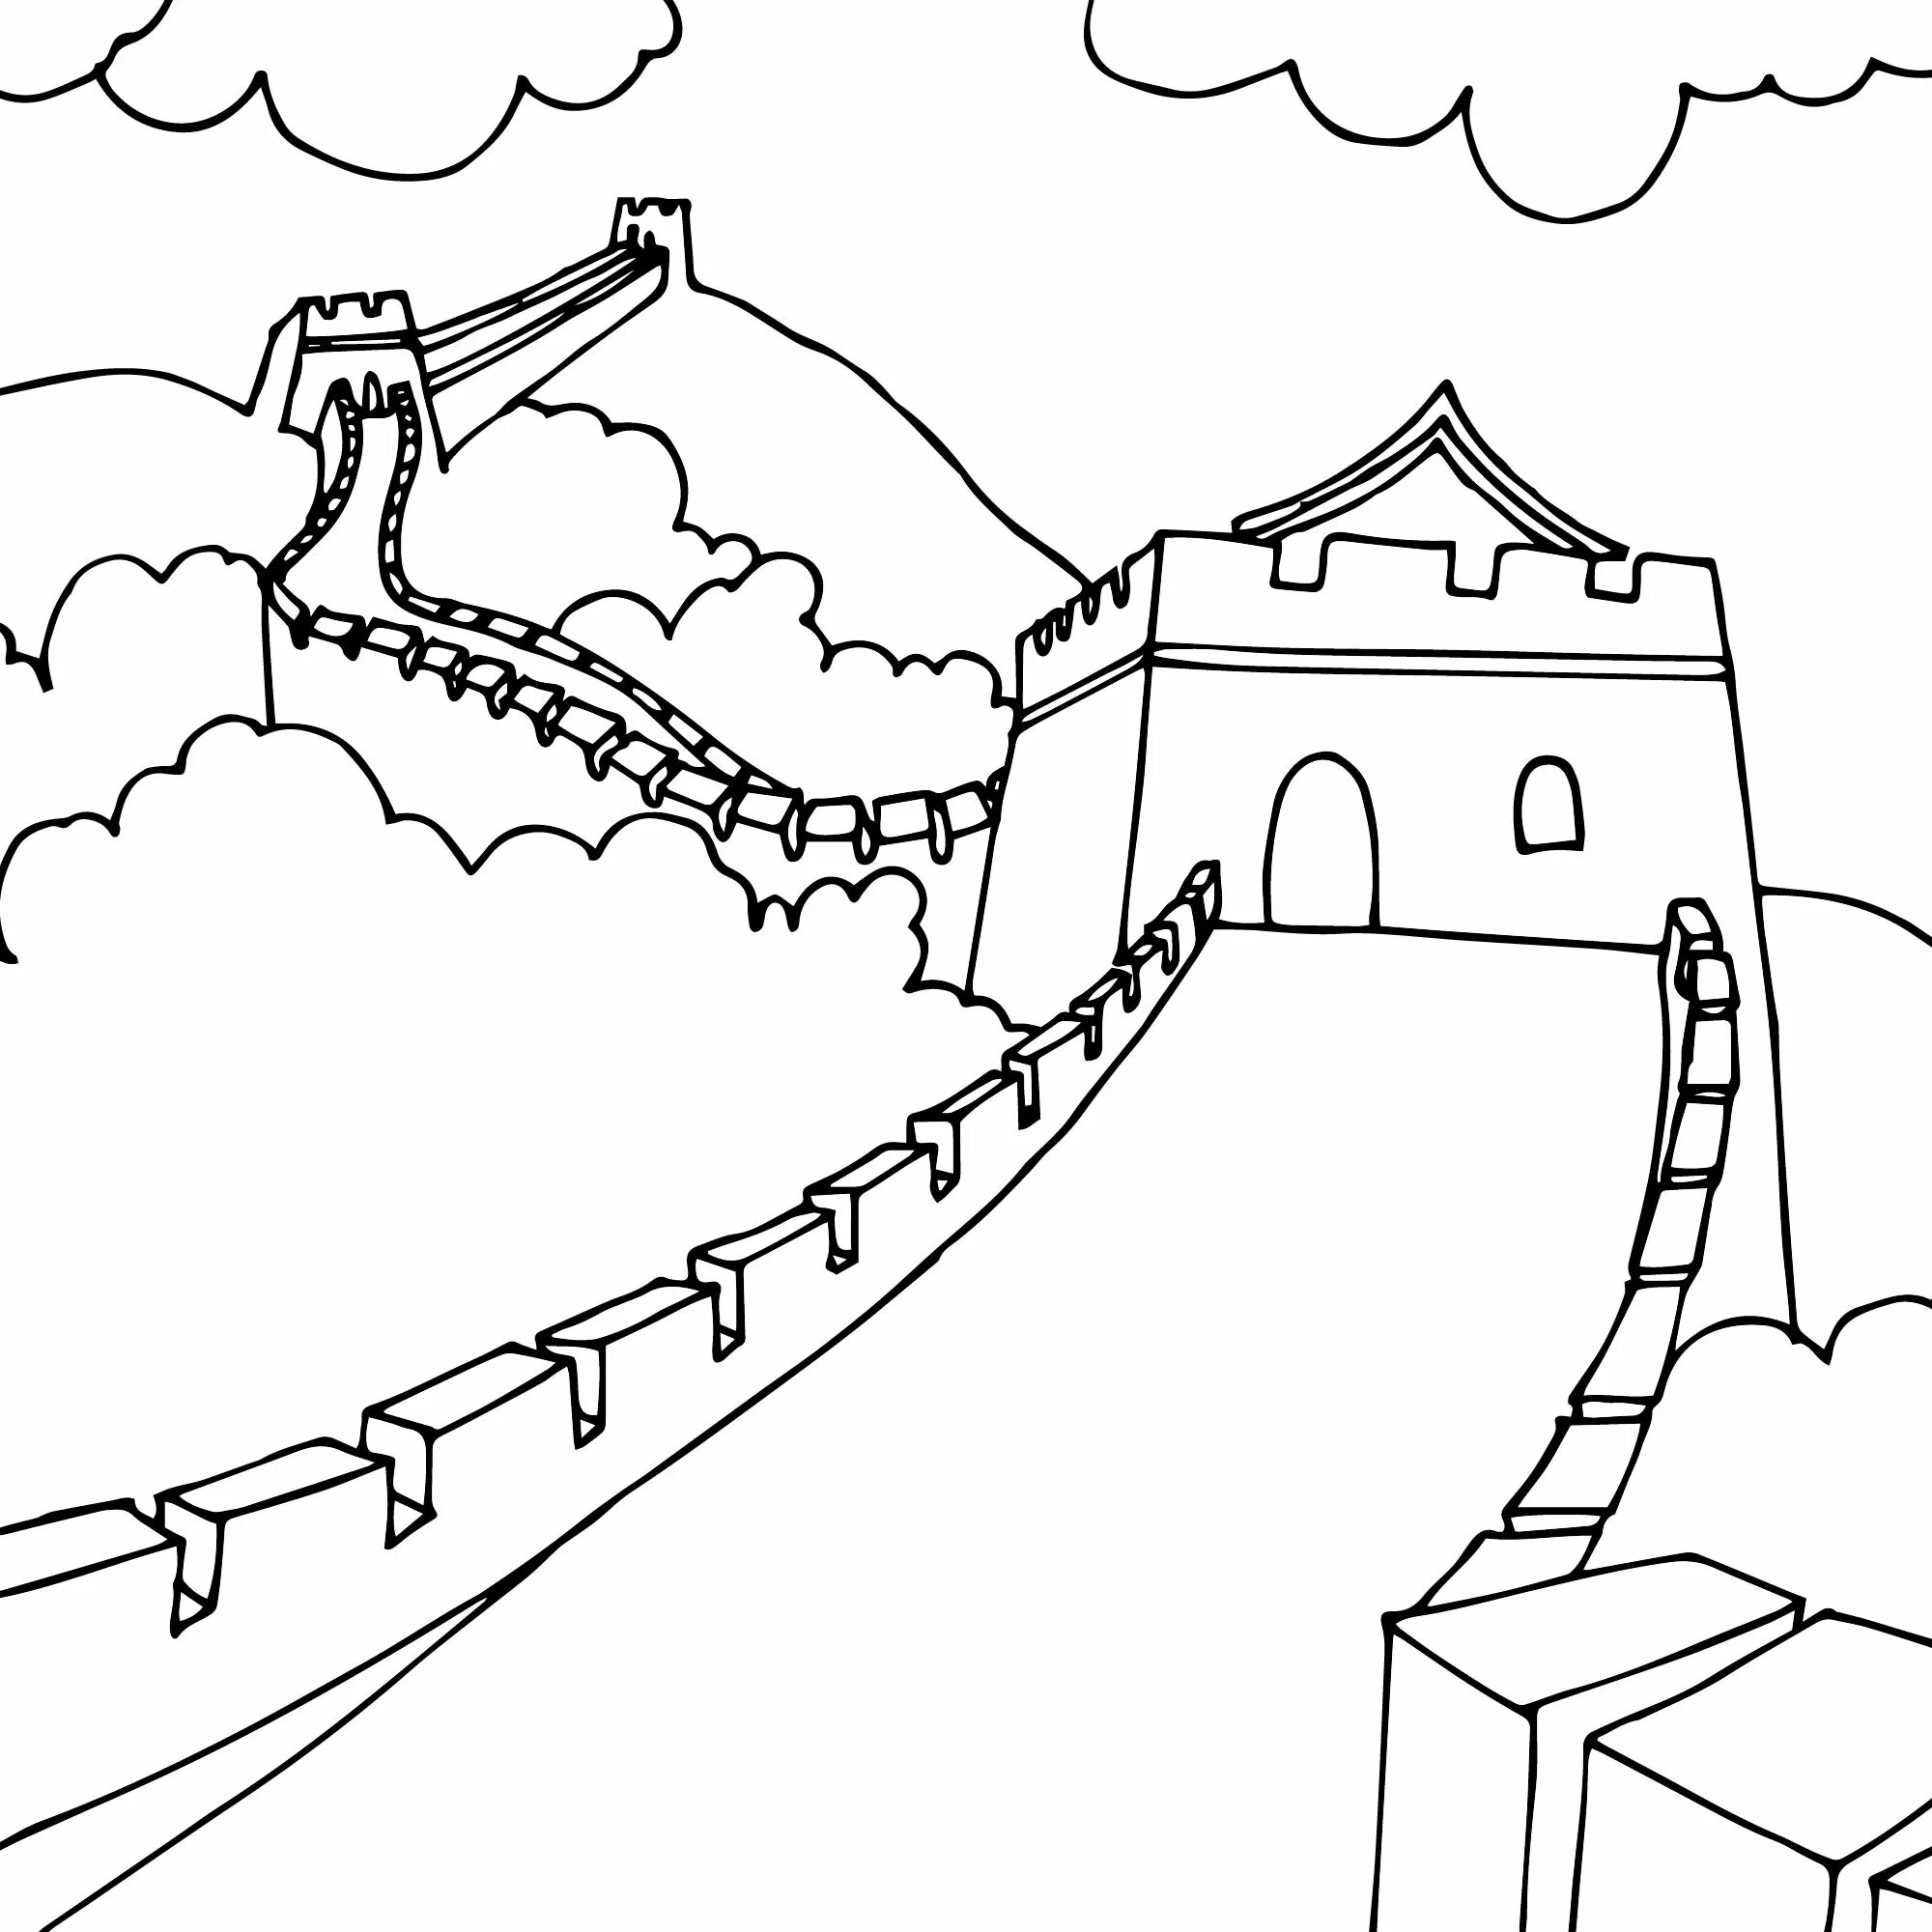 Great Wall of China #18